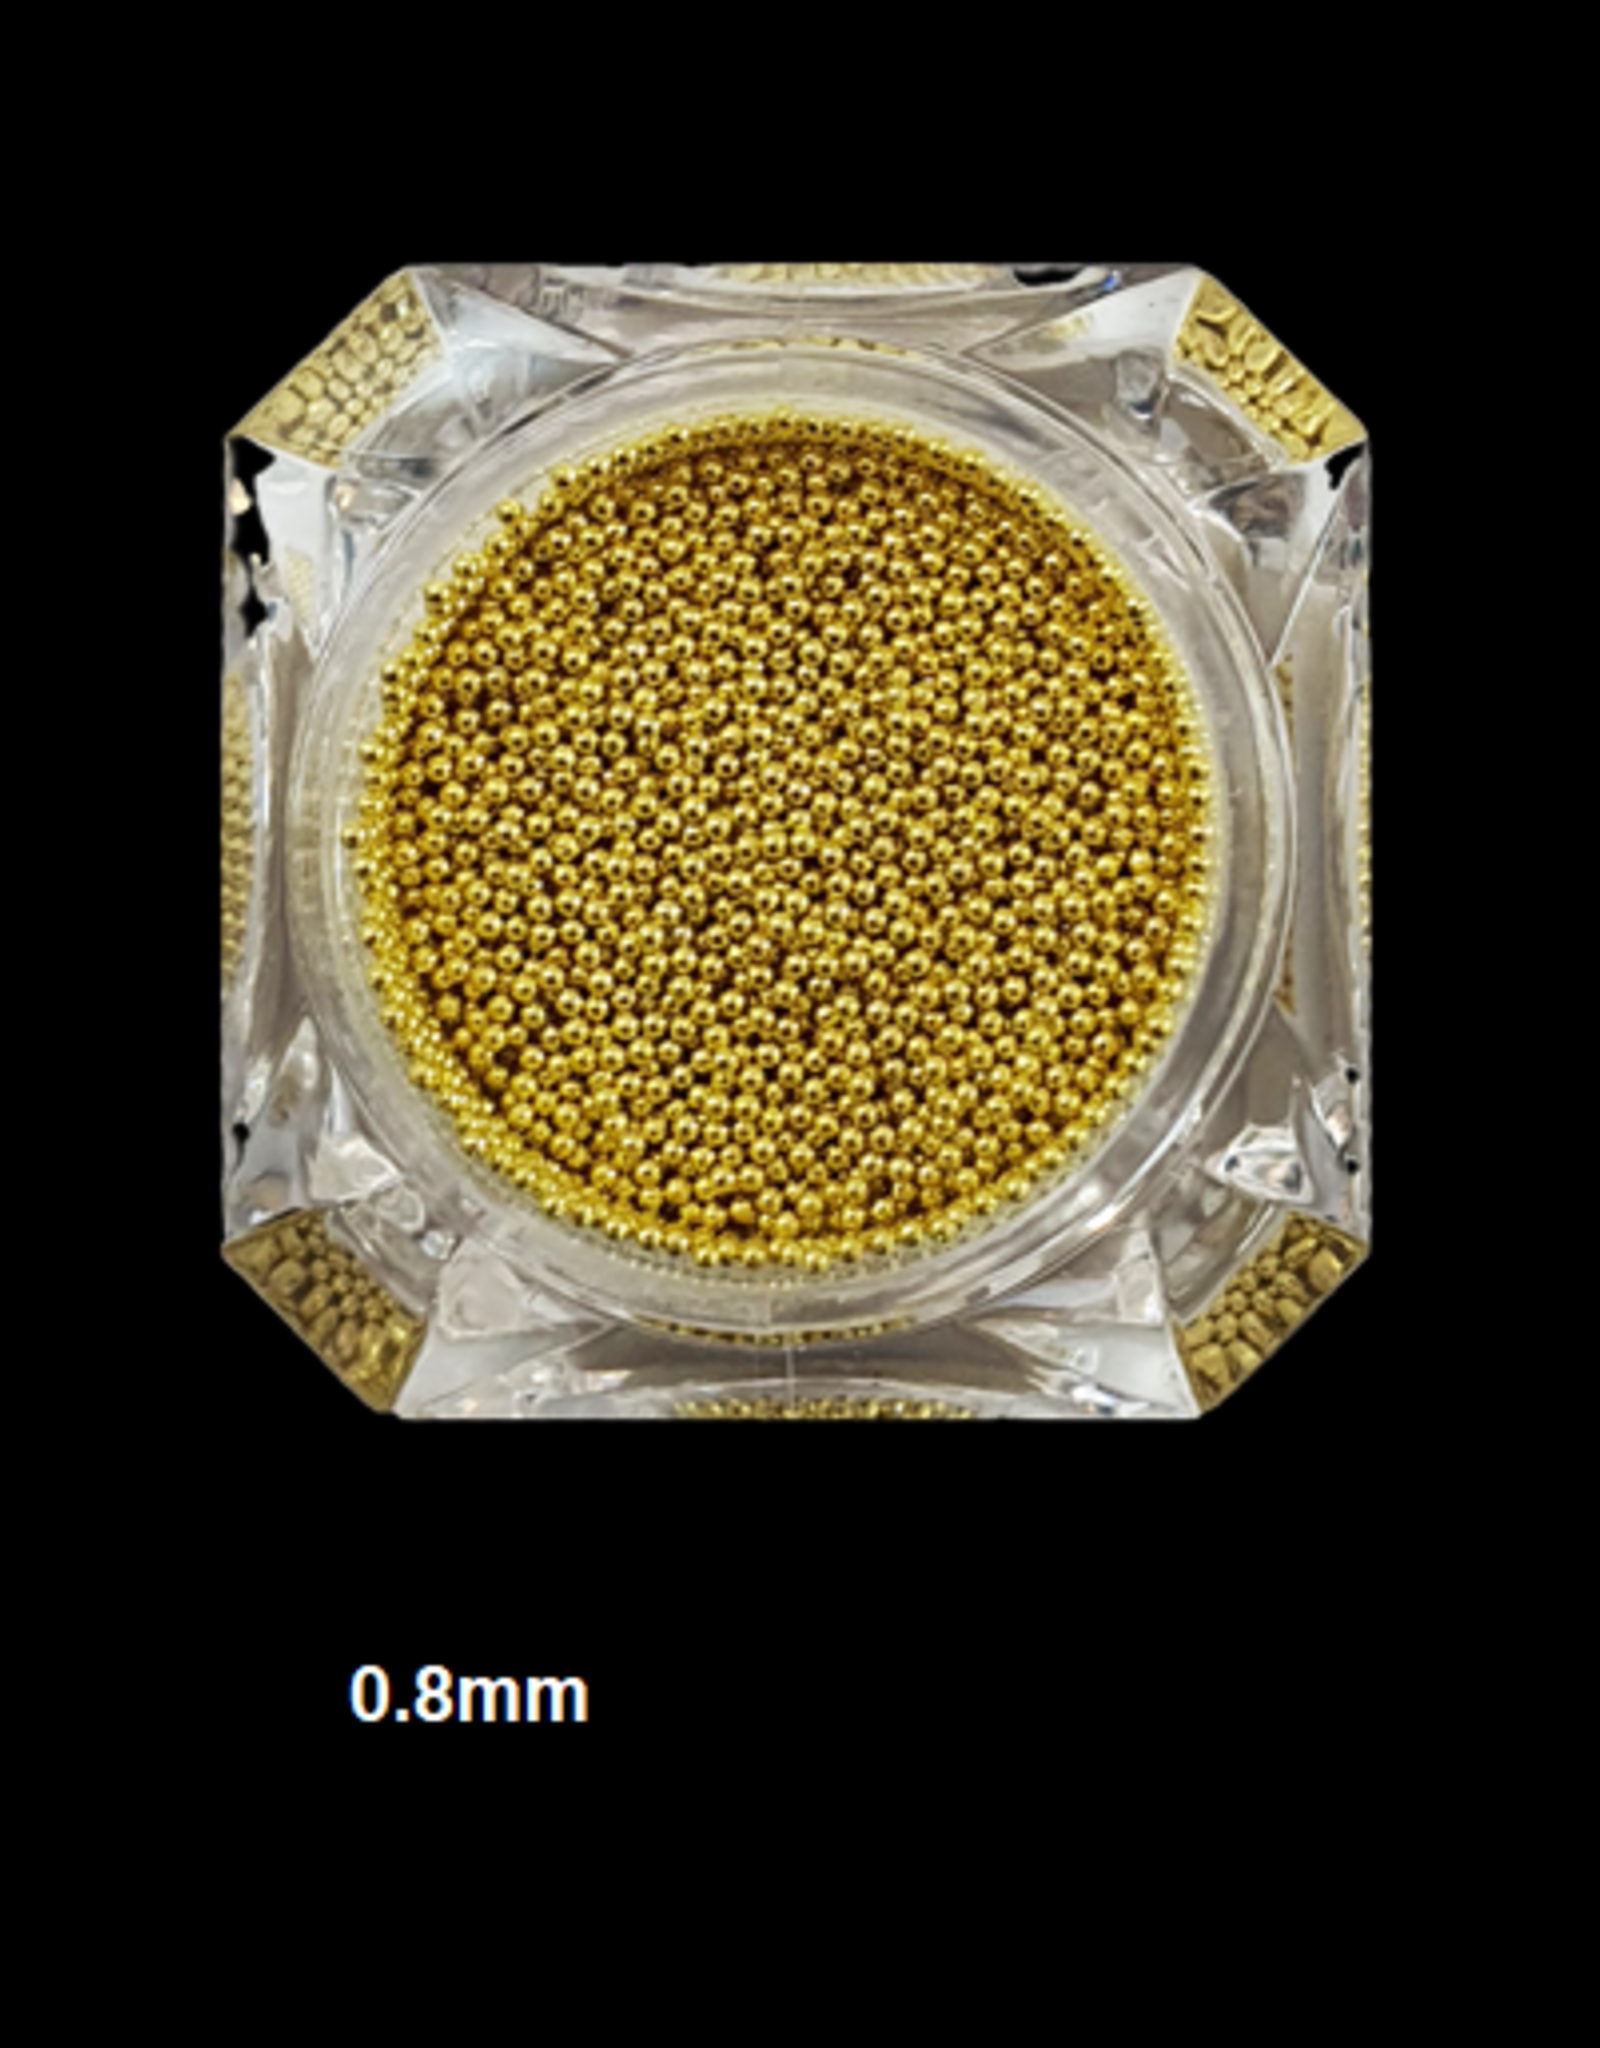 Nailart beads / caviar Gold